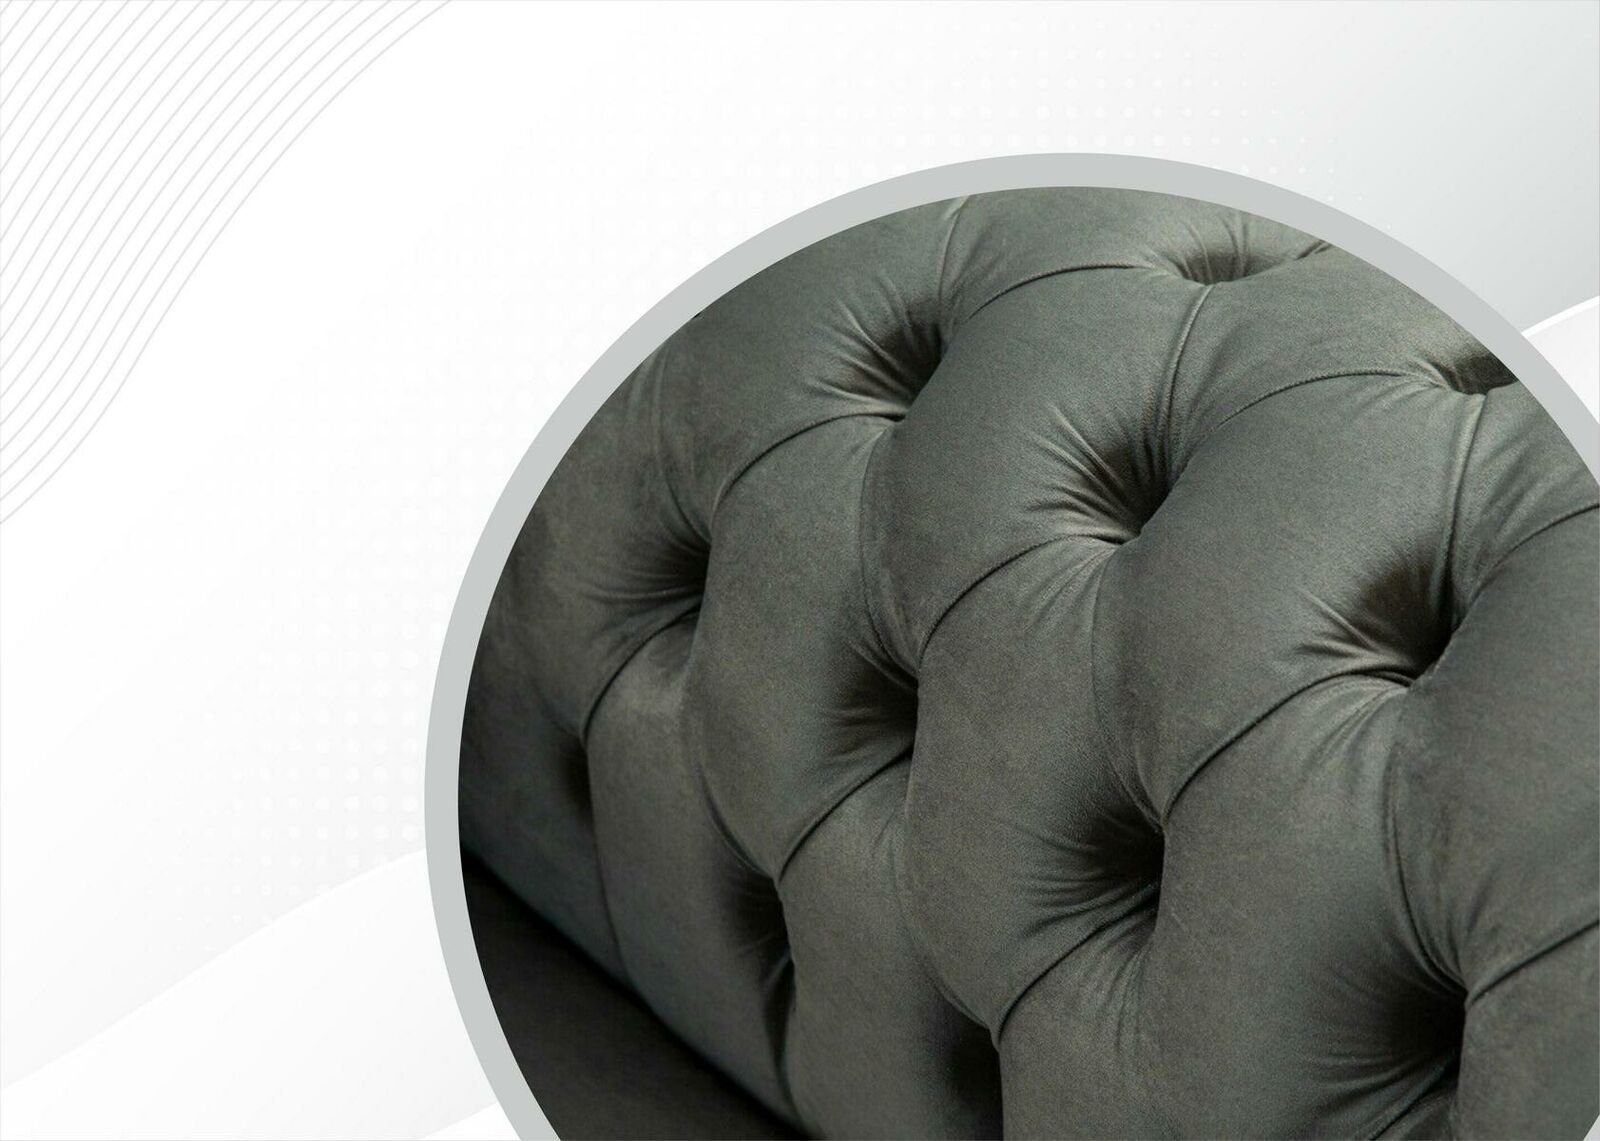 JVmoebel Sofa, Sofas Zweisitzer Möbel Textil Couchen Luxus Chesterfield Sitz Sofa